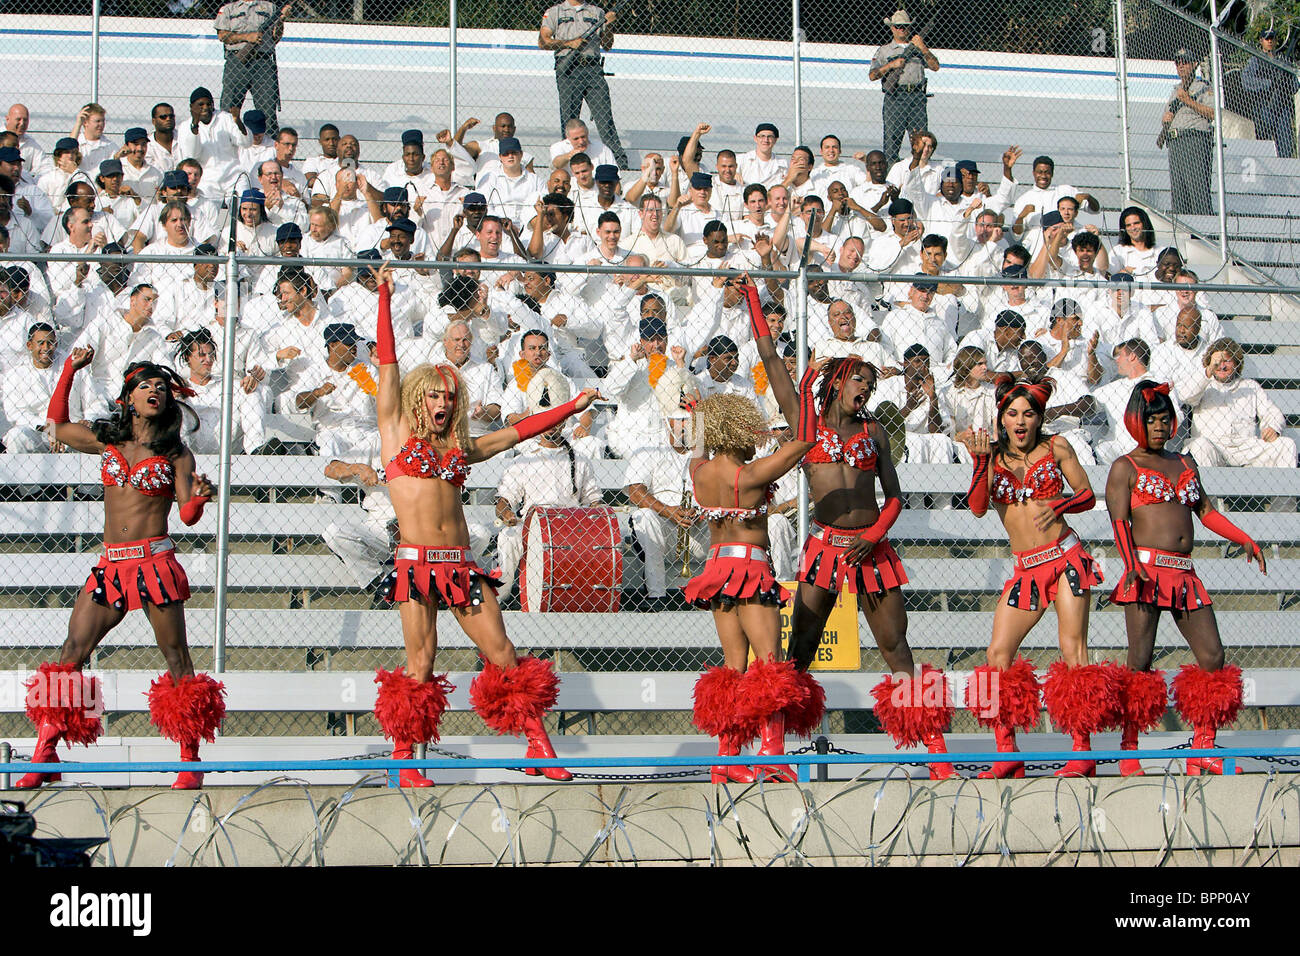 transvestite-cheerleaders-the-longest-yard-2005-BPP0AY.jpg